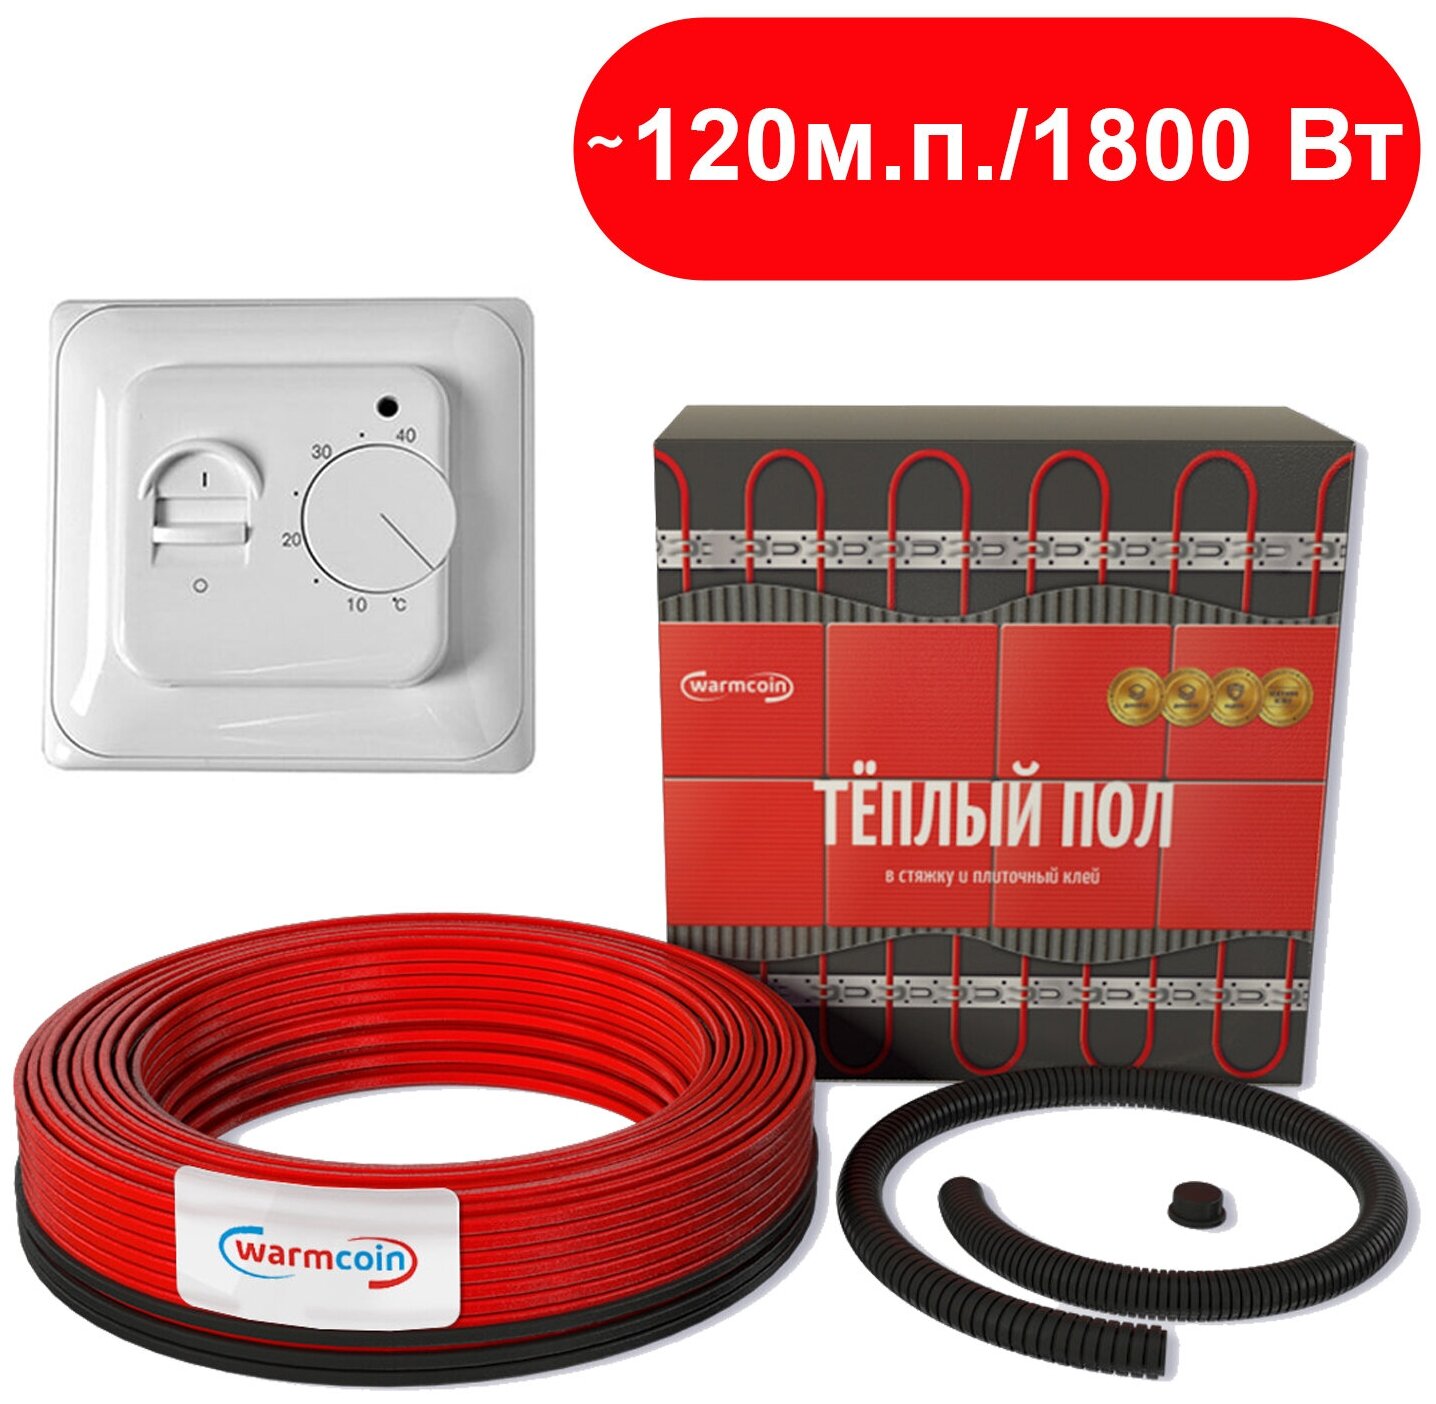 Теплый пол кабель WarmCoin Universal 1800 Вт / ~120 м с термостатом - фотография № 1